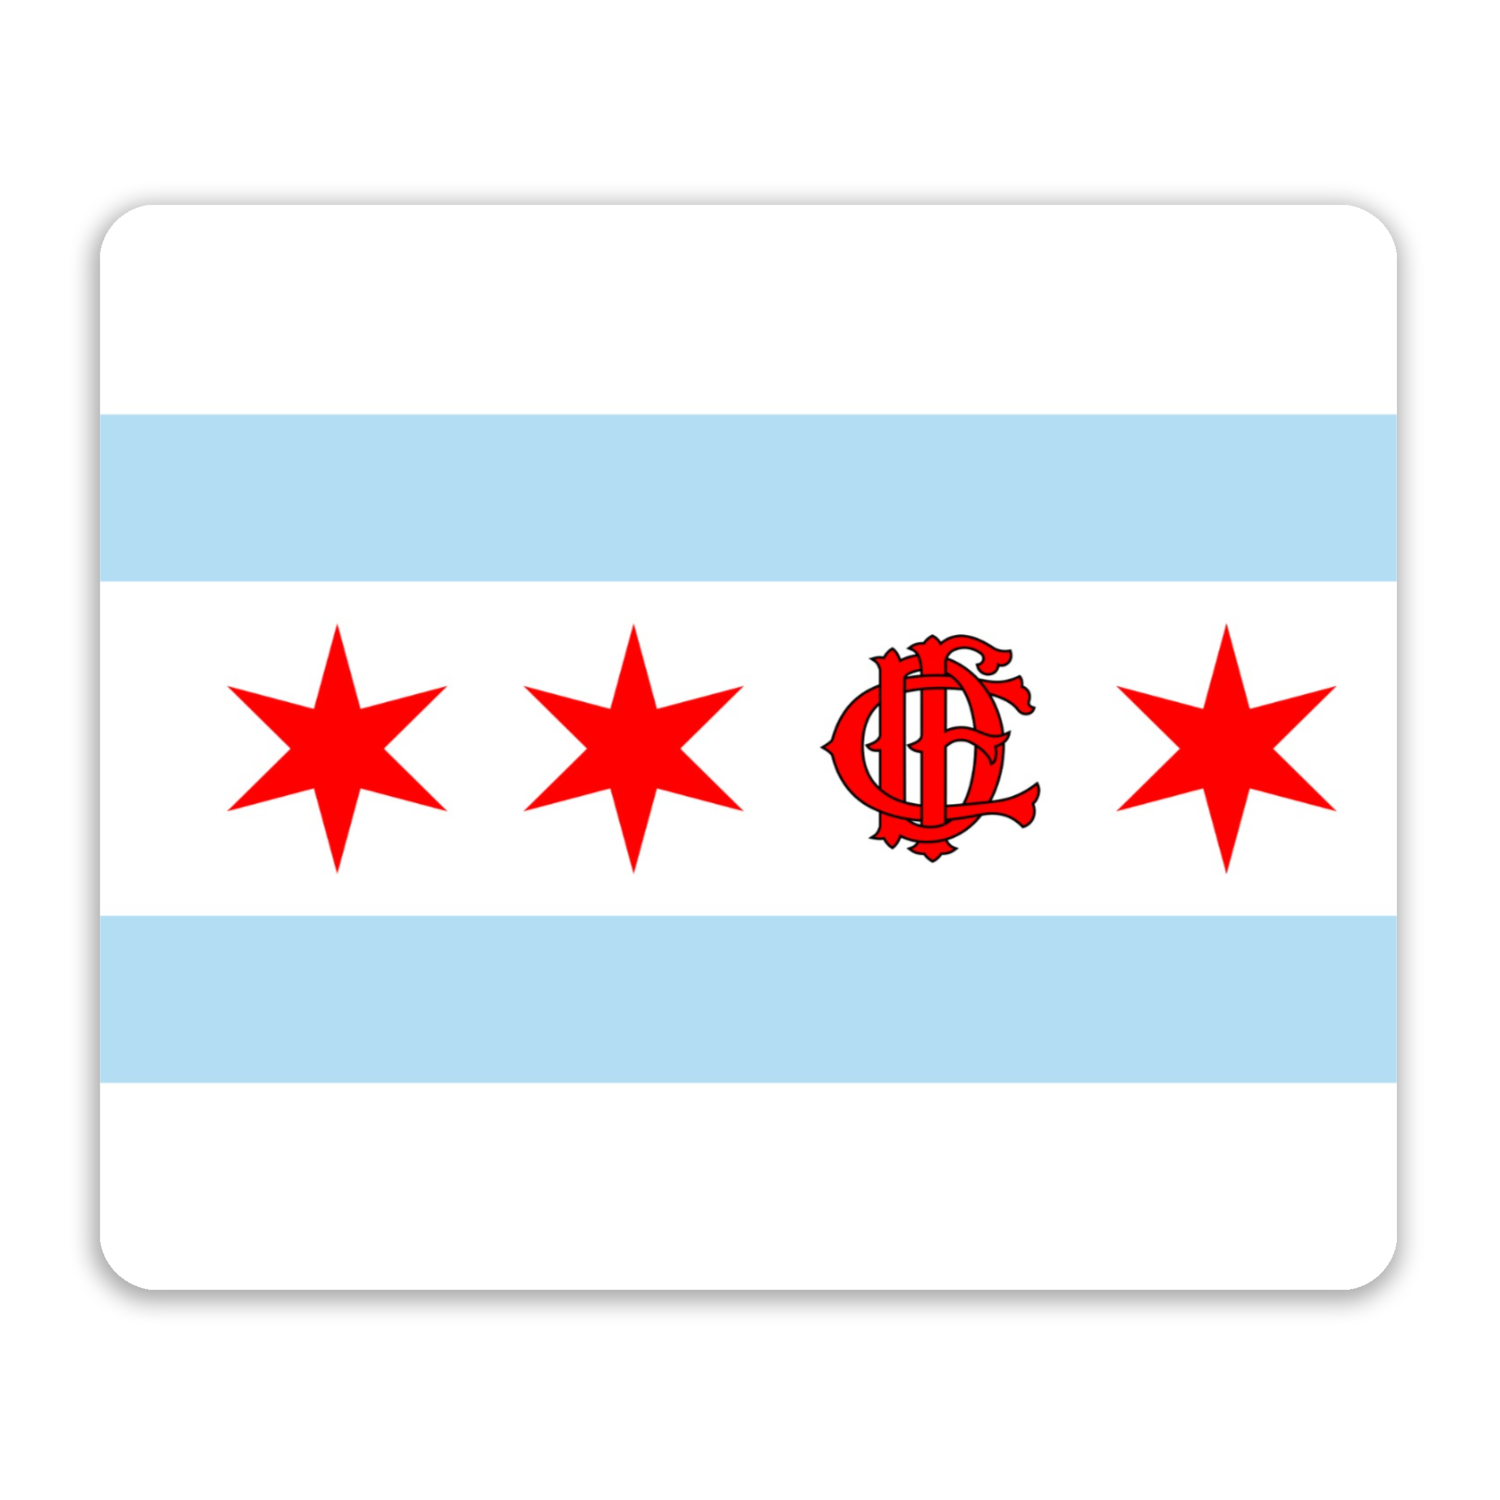 Chicago FD/EMT Flag Mouse Pad